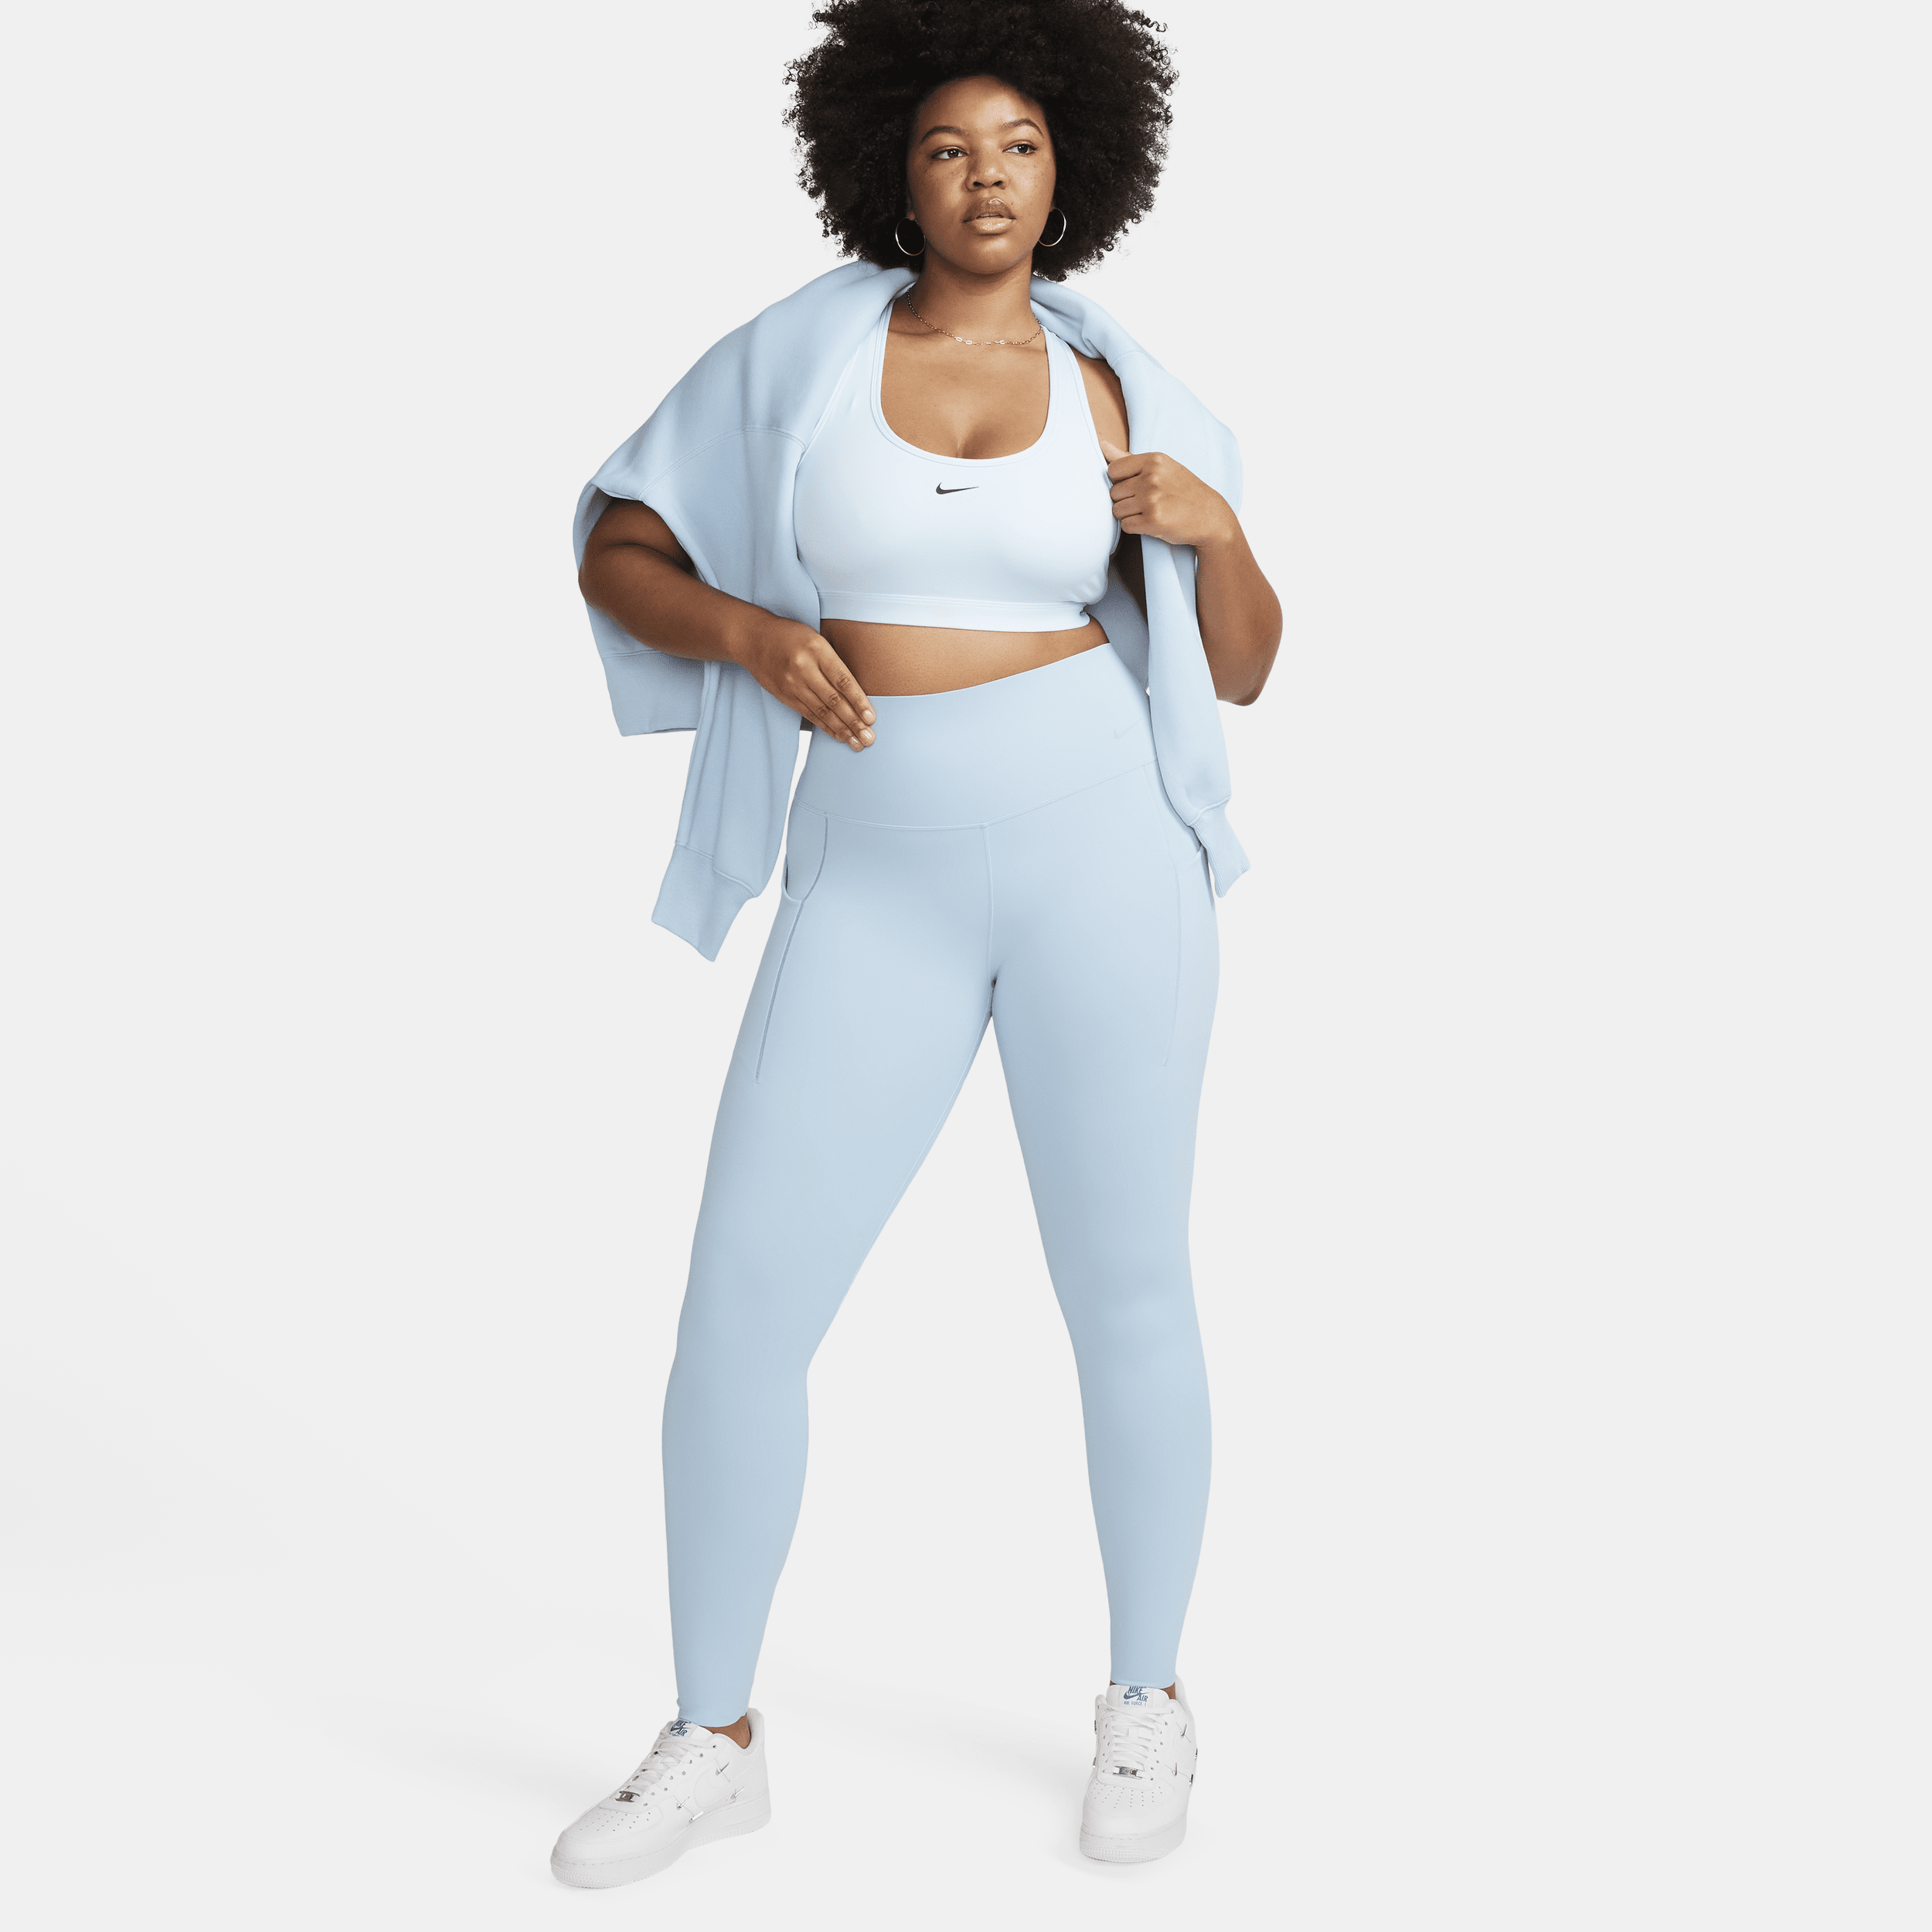 Leggings a tutta lunghezza a vita alta con tasche e sostegno medio Nike Universa – Donna - Blu